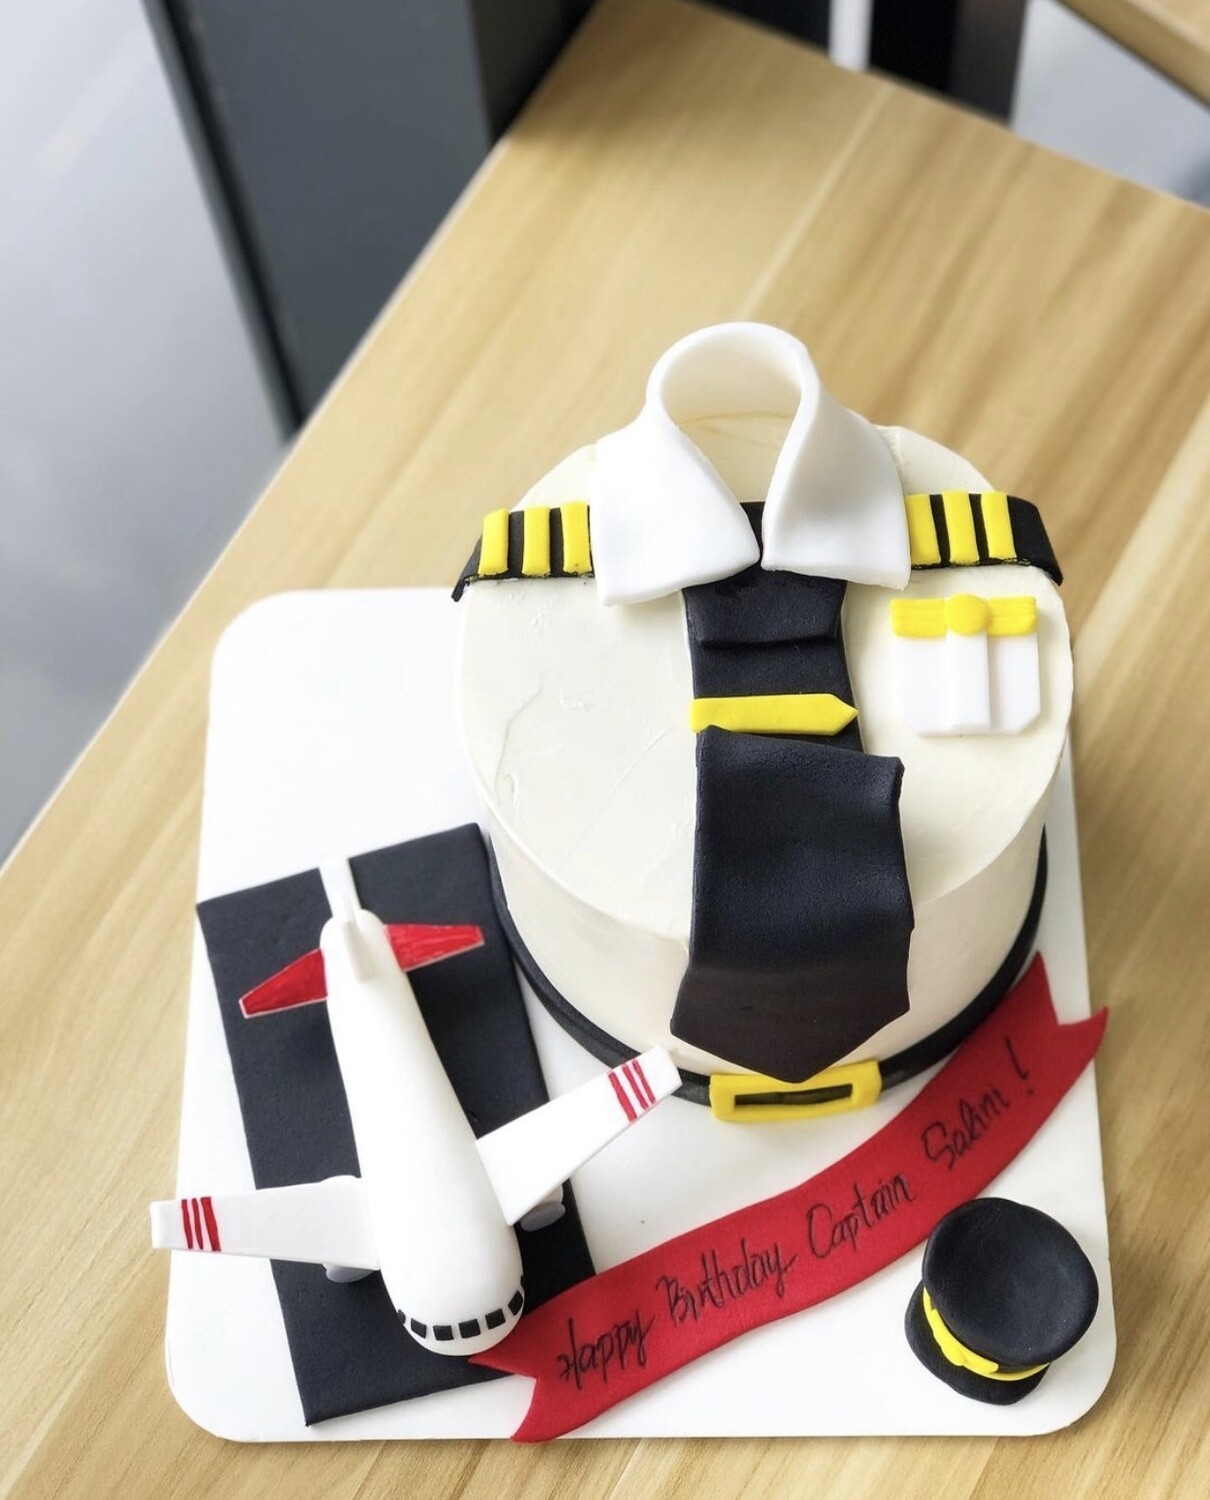 I’m A Plane Pilot Cake 2